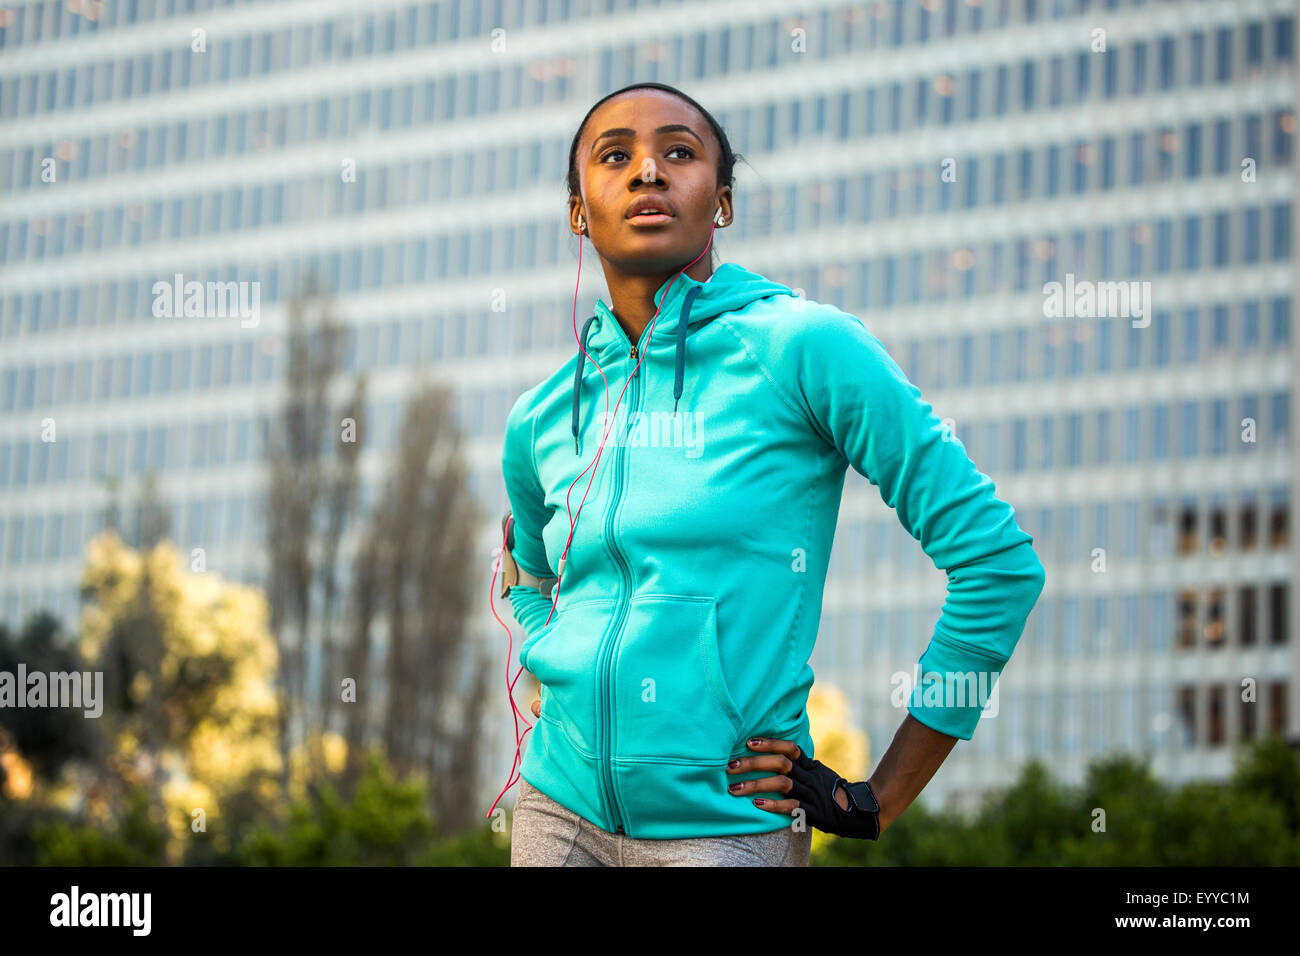 Black runner standing near high rise building Stock Photo